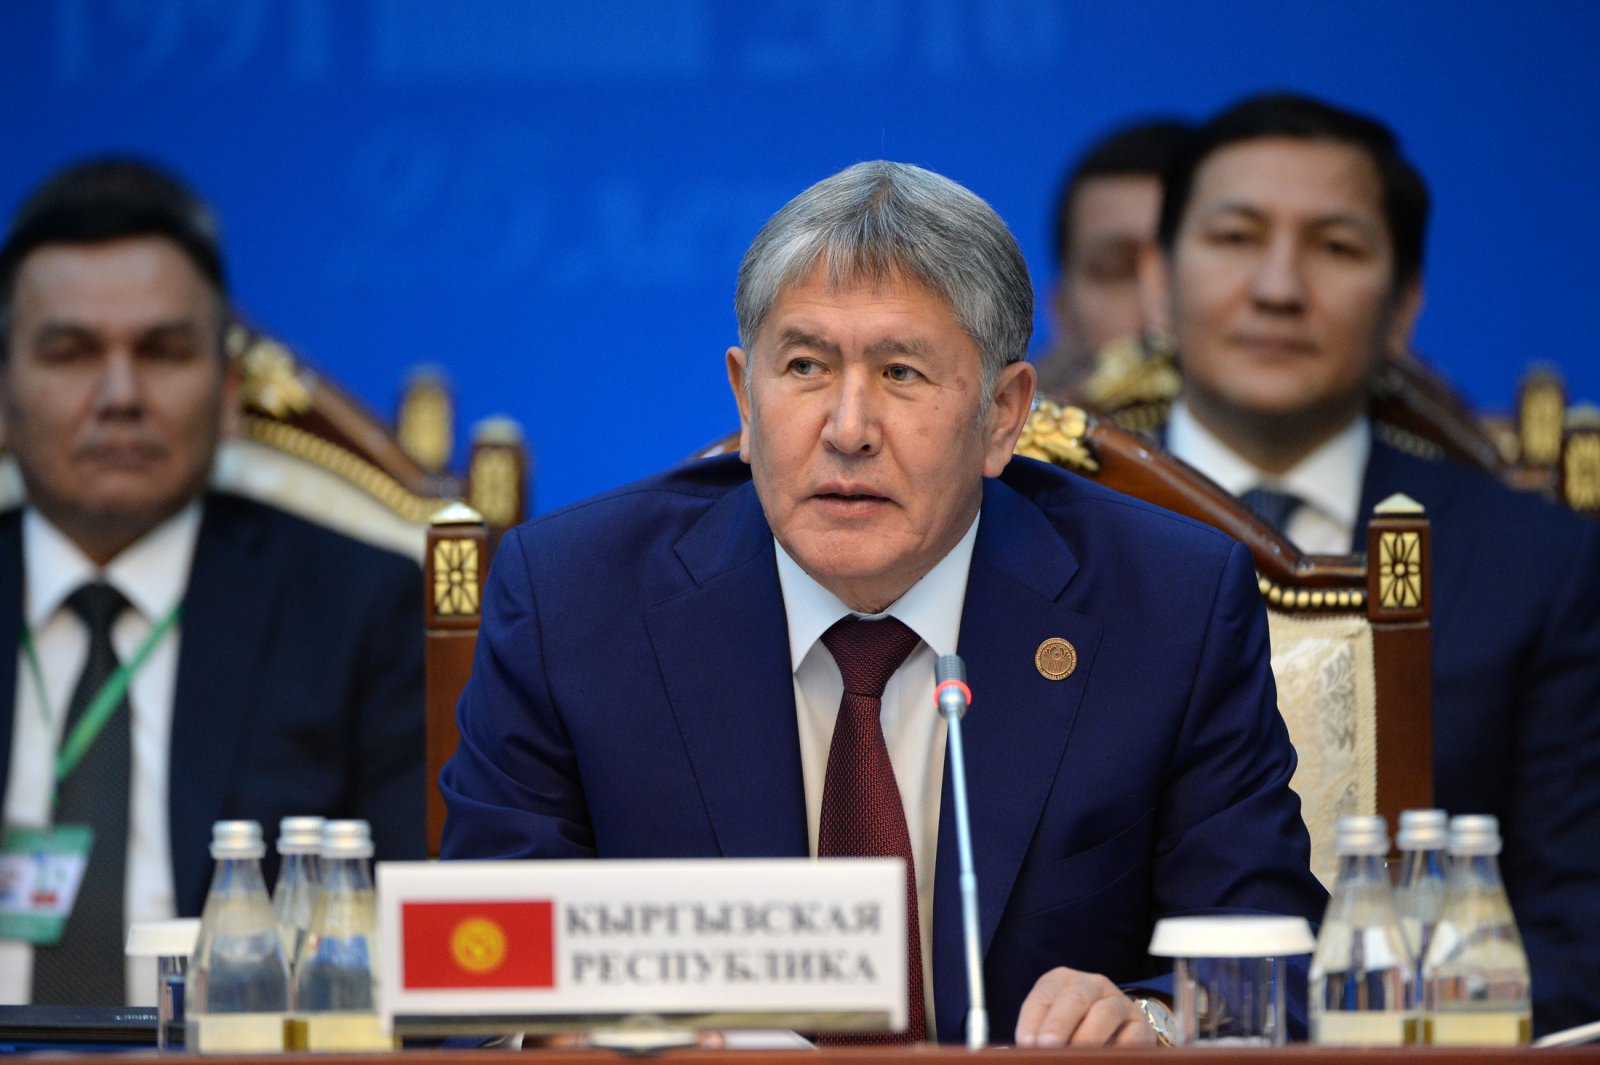 16 сентября. Президент Кыргызстана Алмазбек Атамбаев на саммите СНГ в Бишкеке; фото: пресс-служба правительства РК